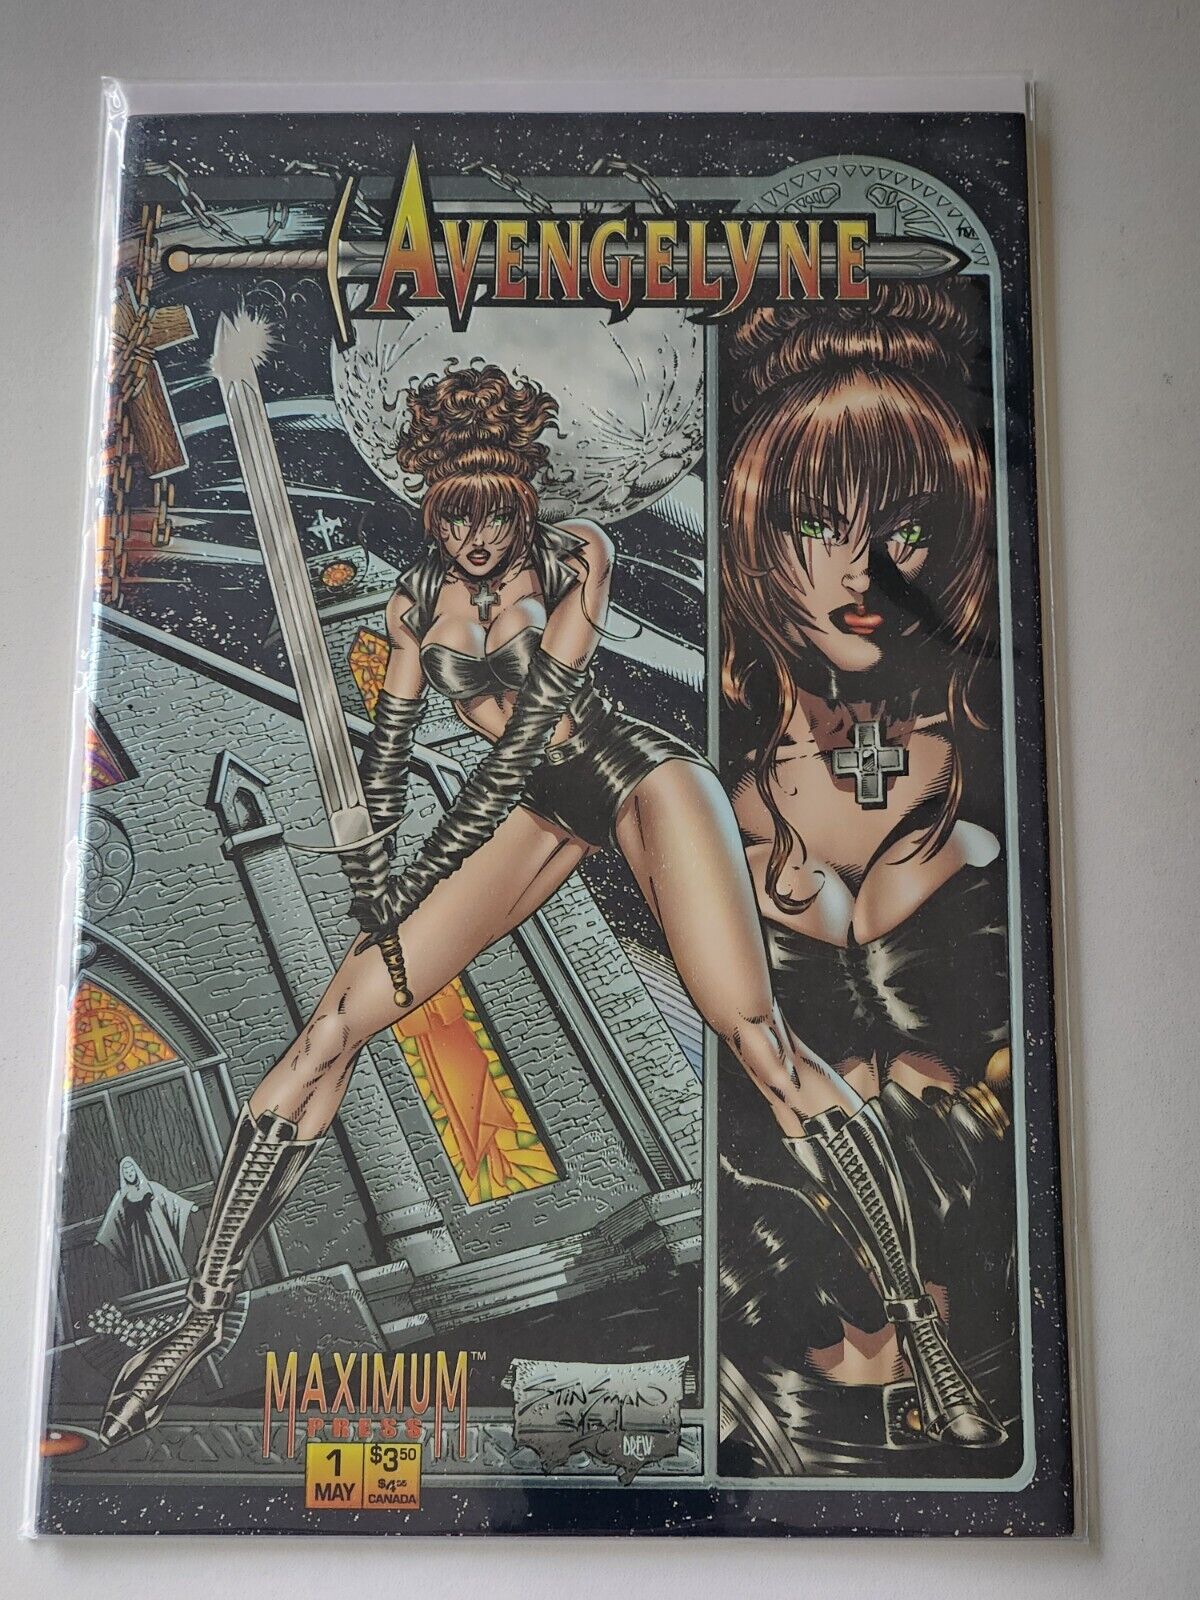 Avengelyne #1 1995 Maximum Press Chromium Cover Comic NM